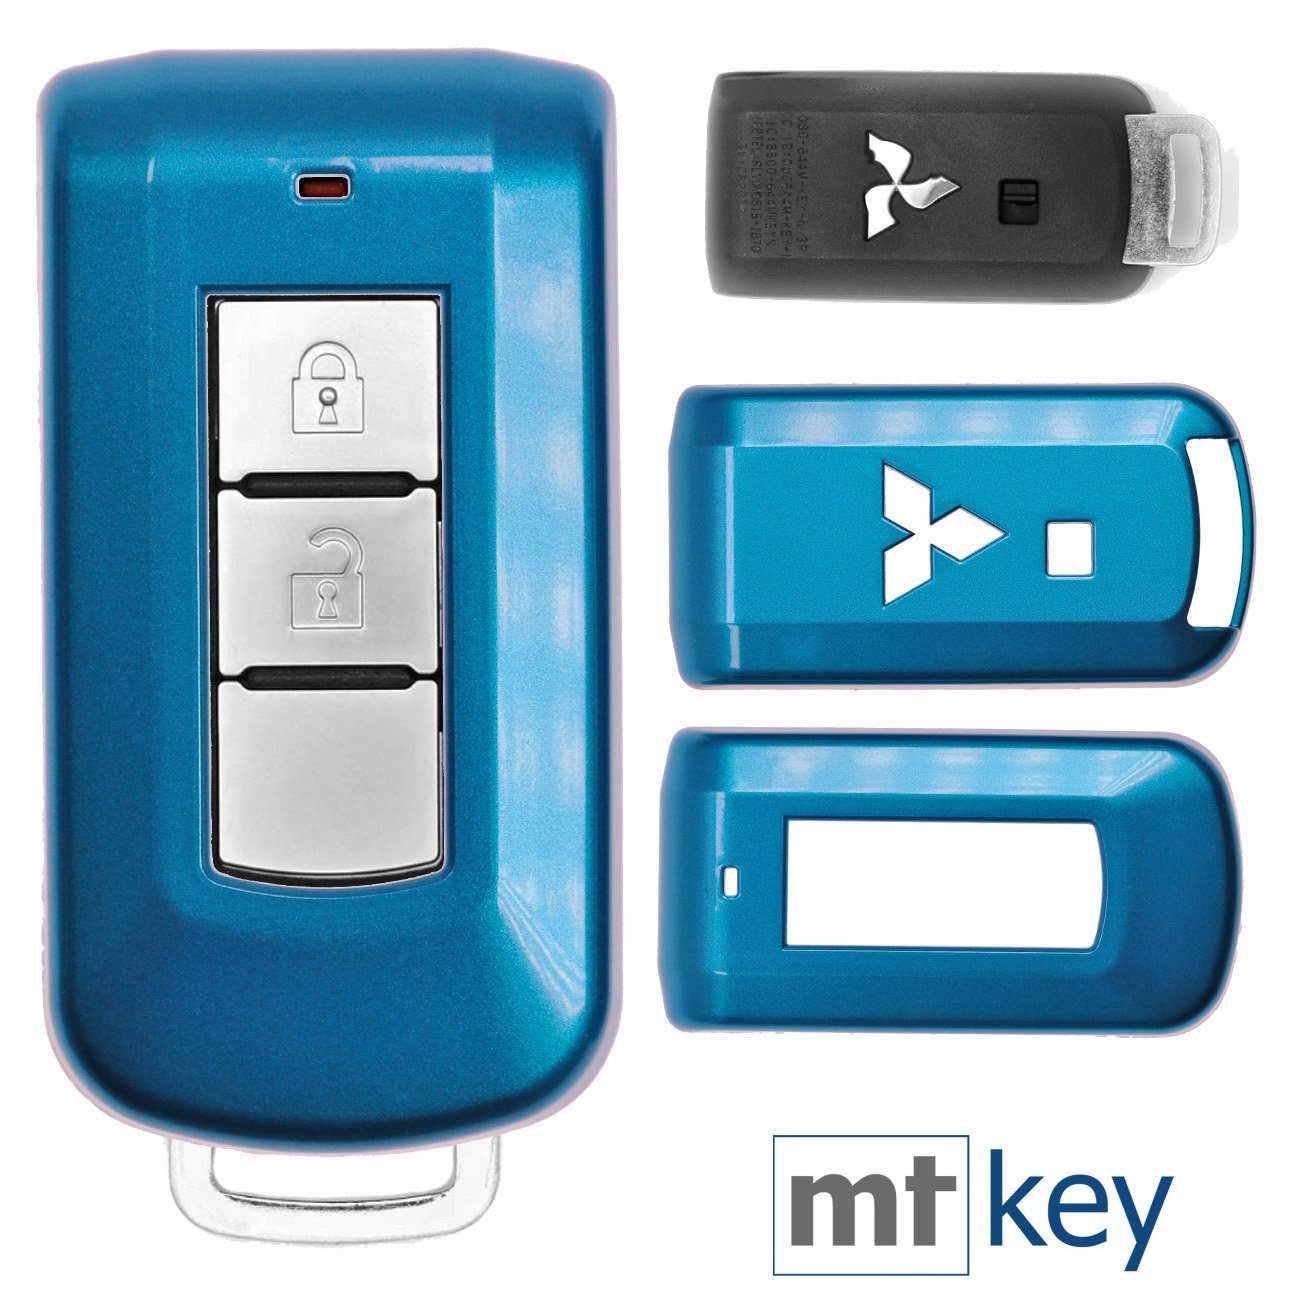 mt-key Schlüsseltasche Autoschlüssel Hardcover Schutzhülle Metallic Blue, für Mitsubishi ASX L200 Outlander Pajero KEYLESS SMARTKEY Metallic Blau